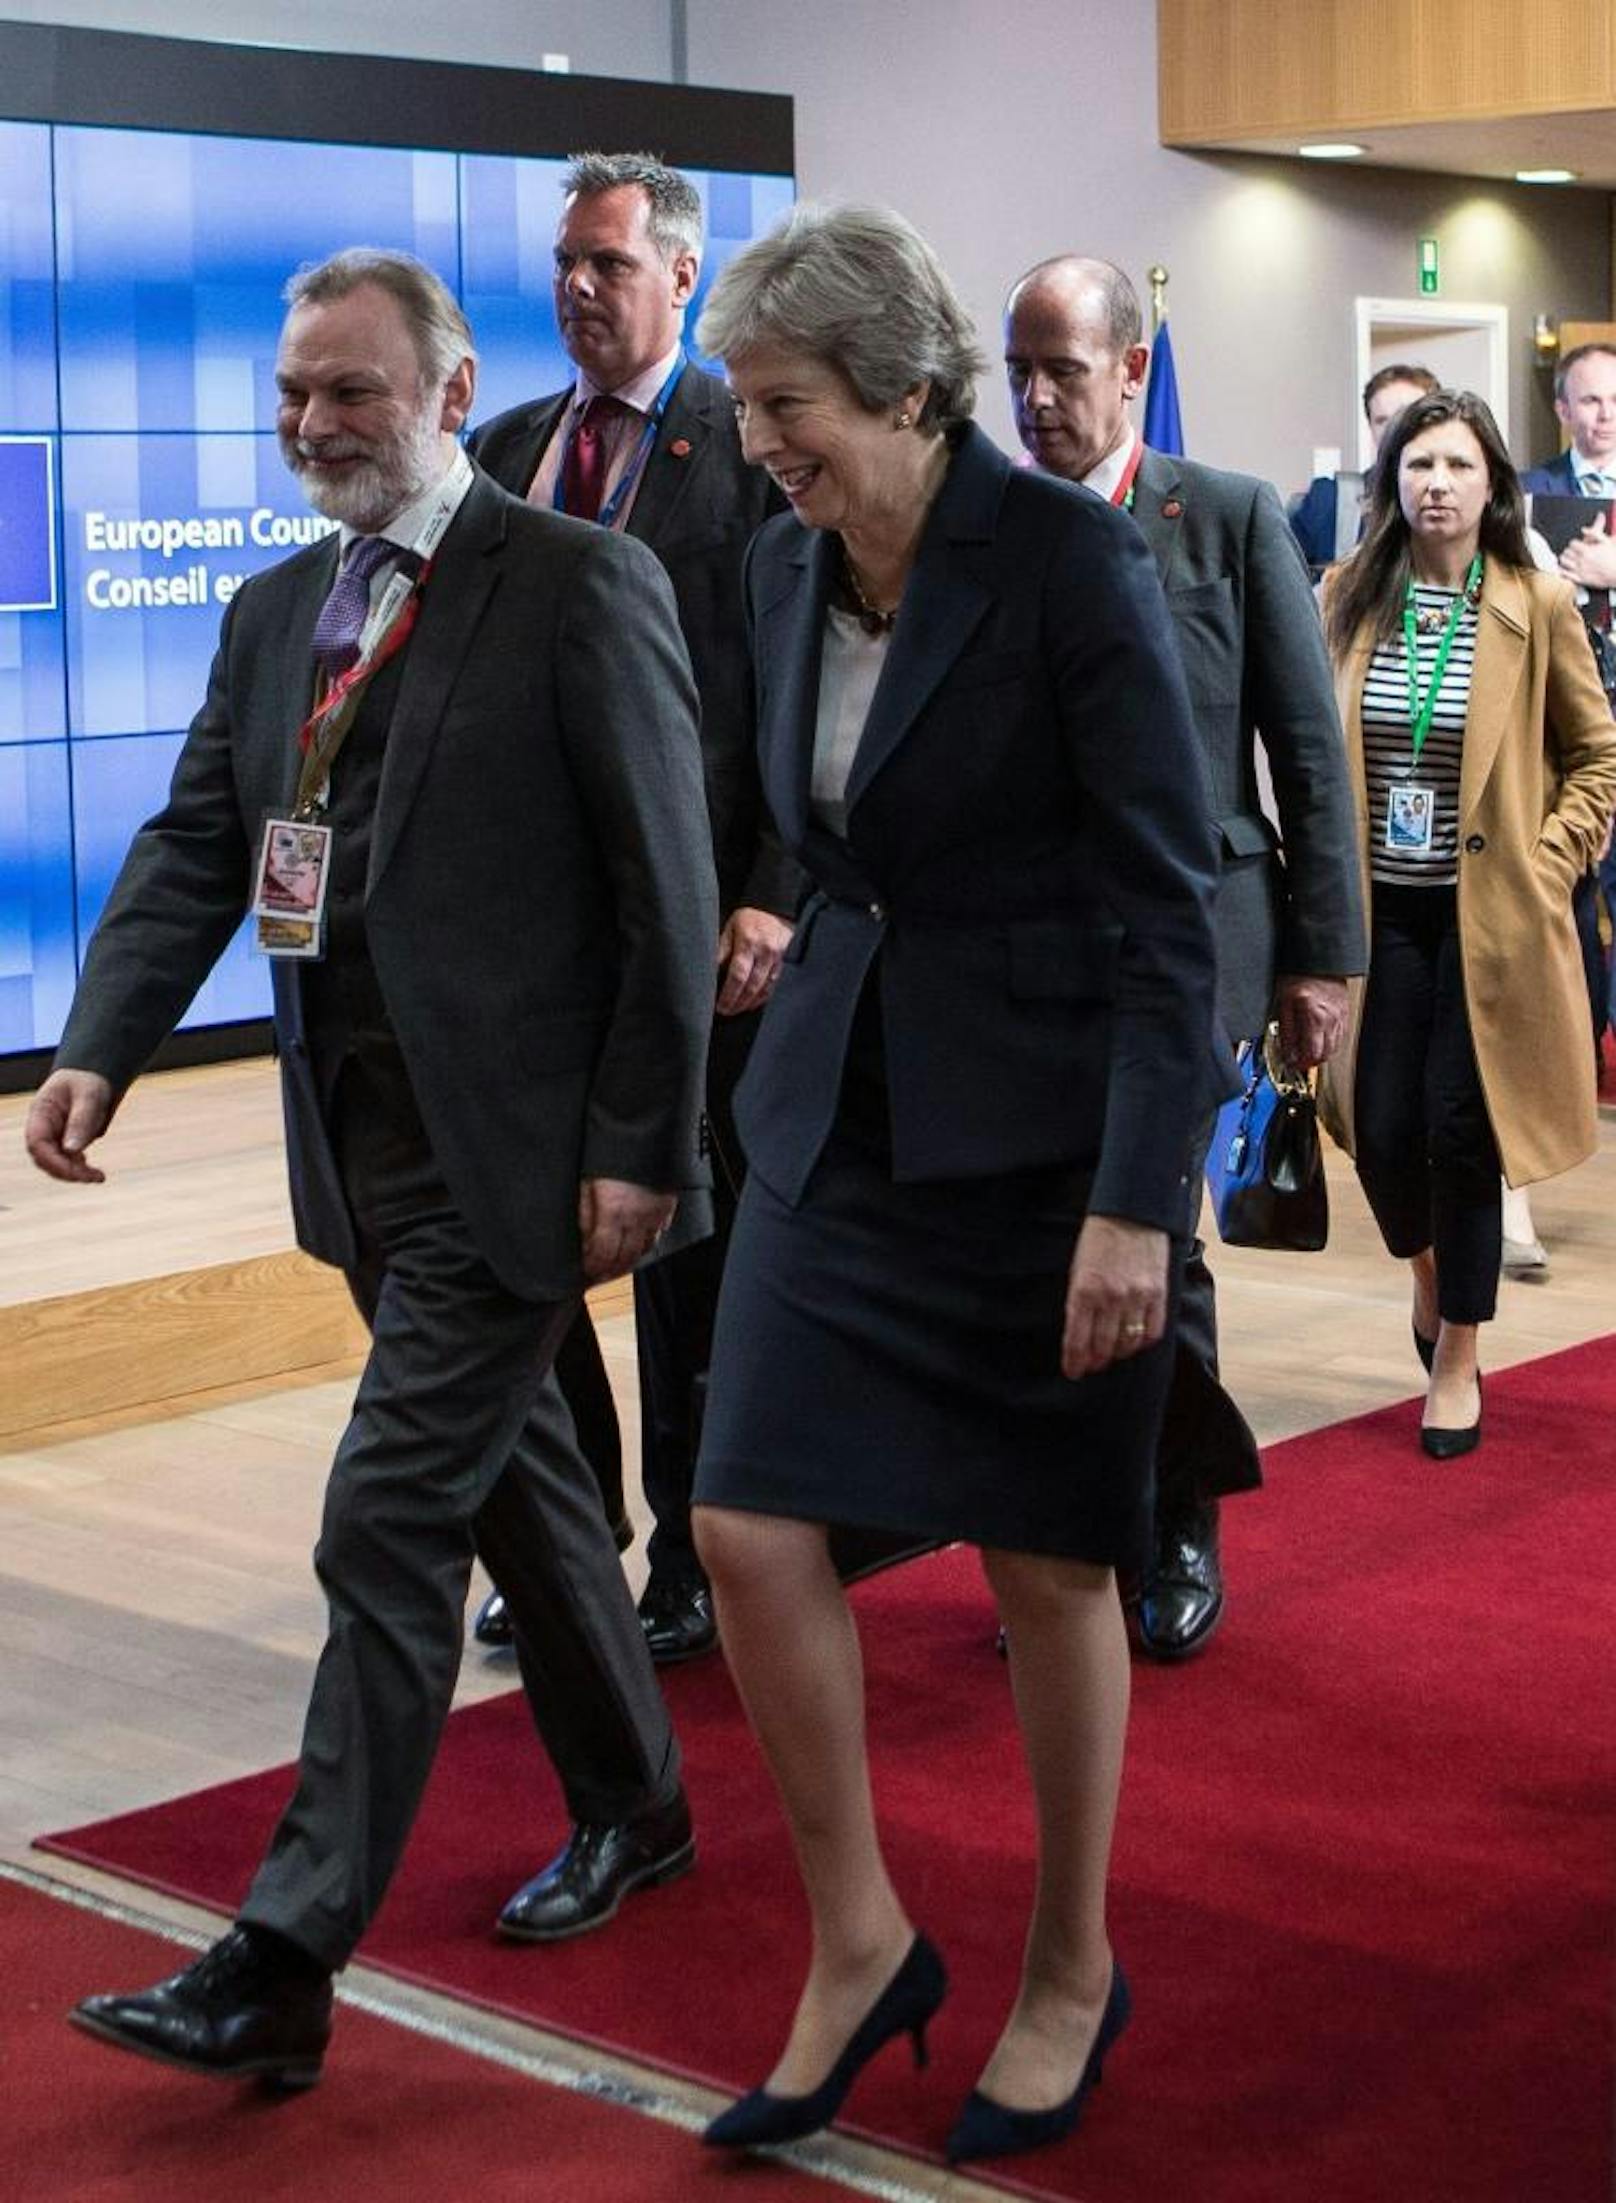 Der Rat der EU-Regierungschefs traf sich am Mittwochabend in Brüssel um erneut über den Brexit zu verhandeln. Die britische Premierministerin Theresa May gab sich zuversichtlich.